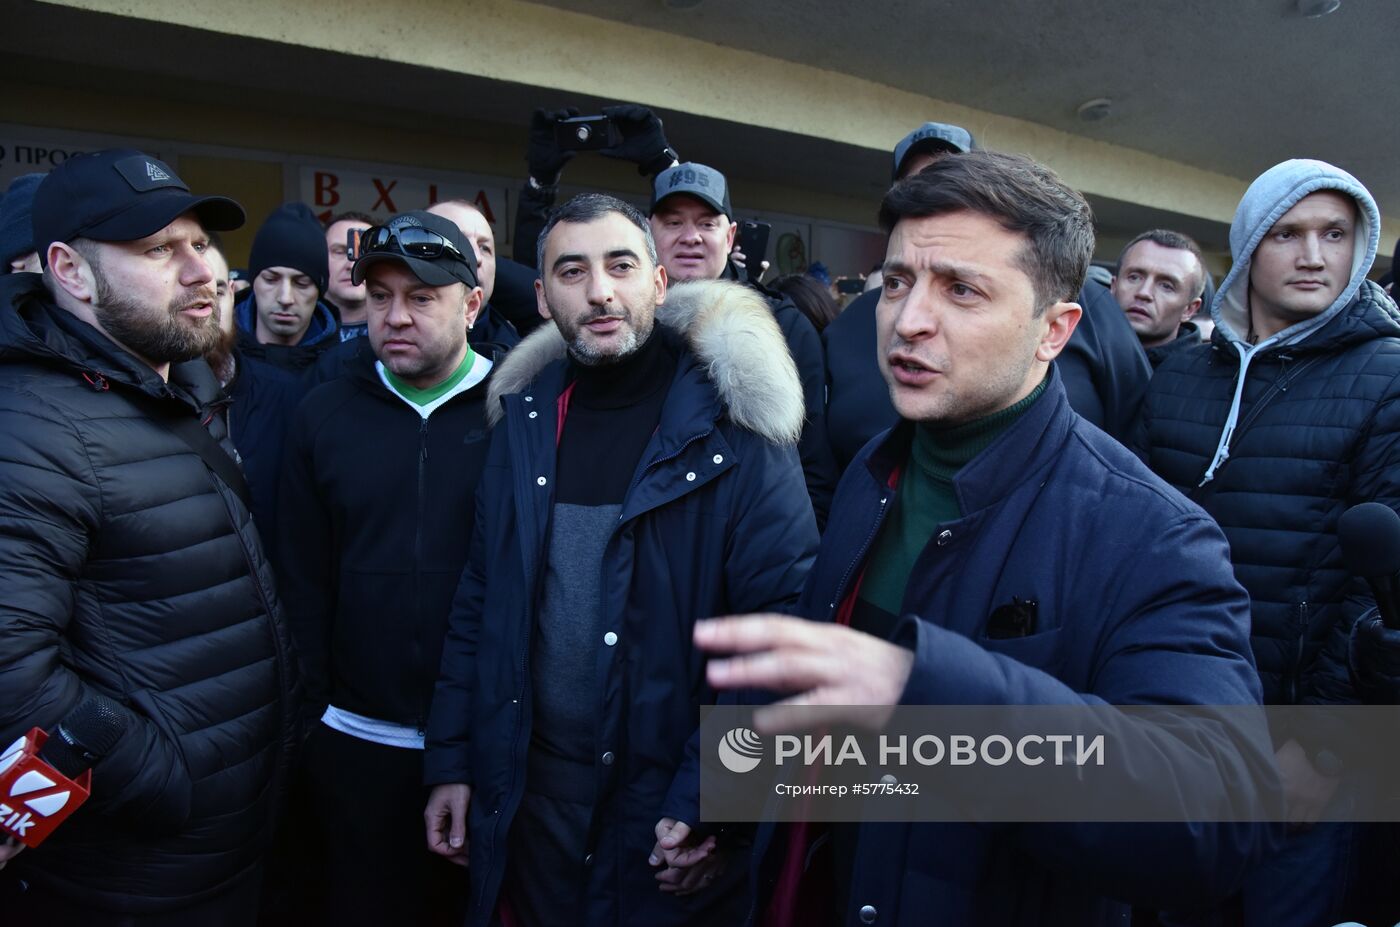 Митинг против кандидата в президенты Украины В. Зеленского во Львове